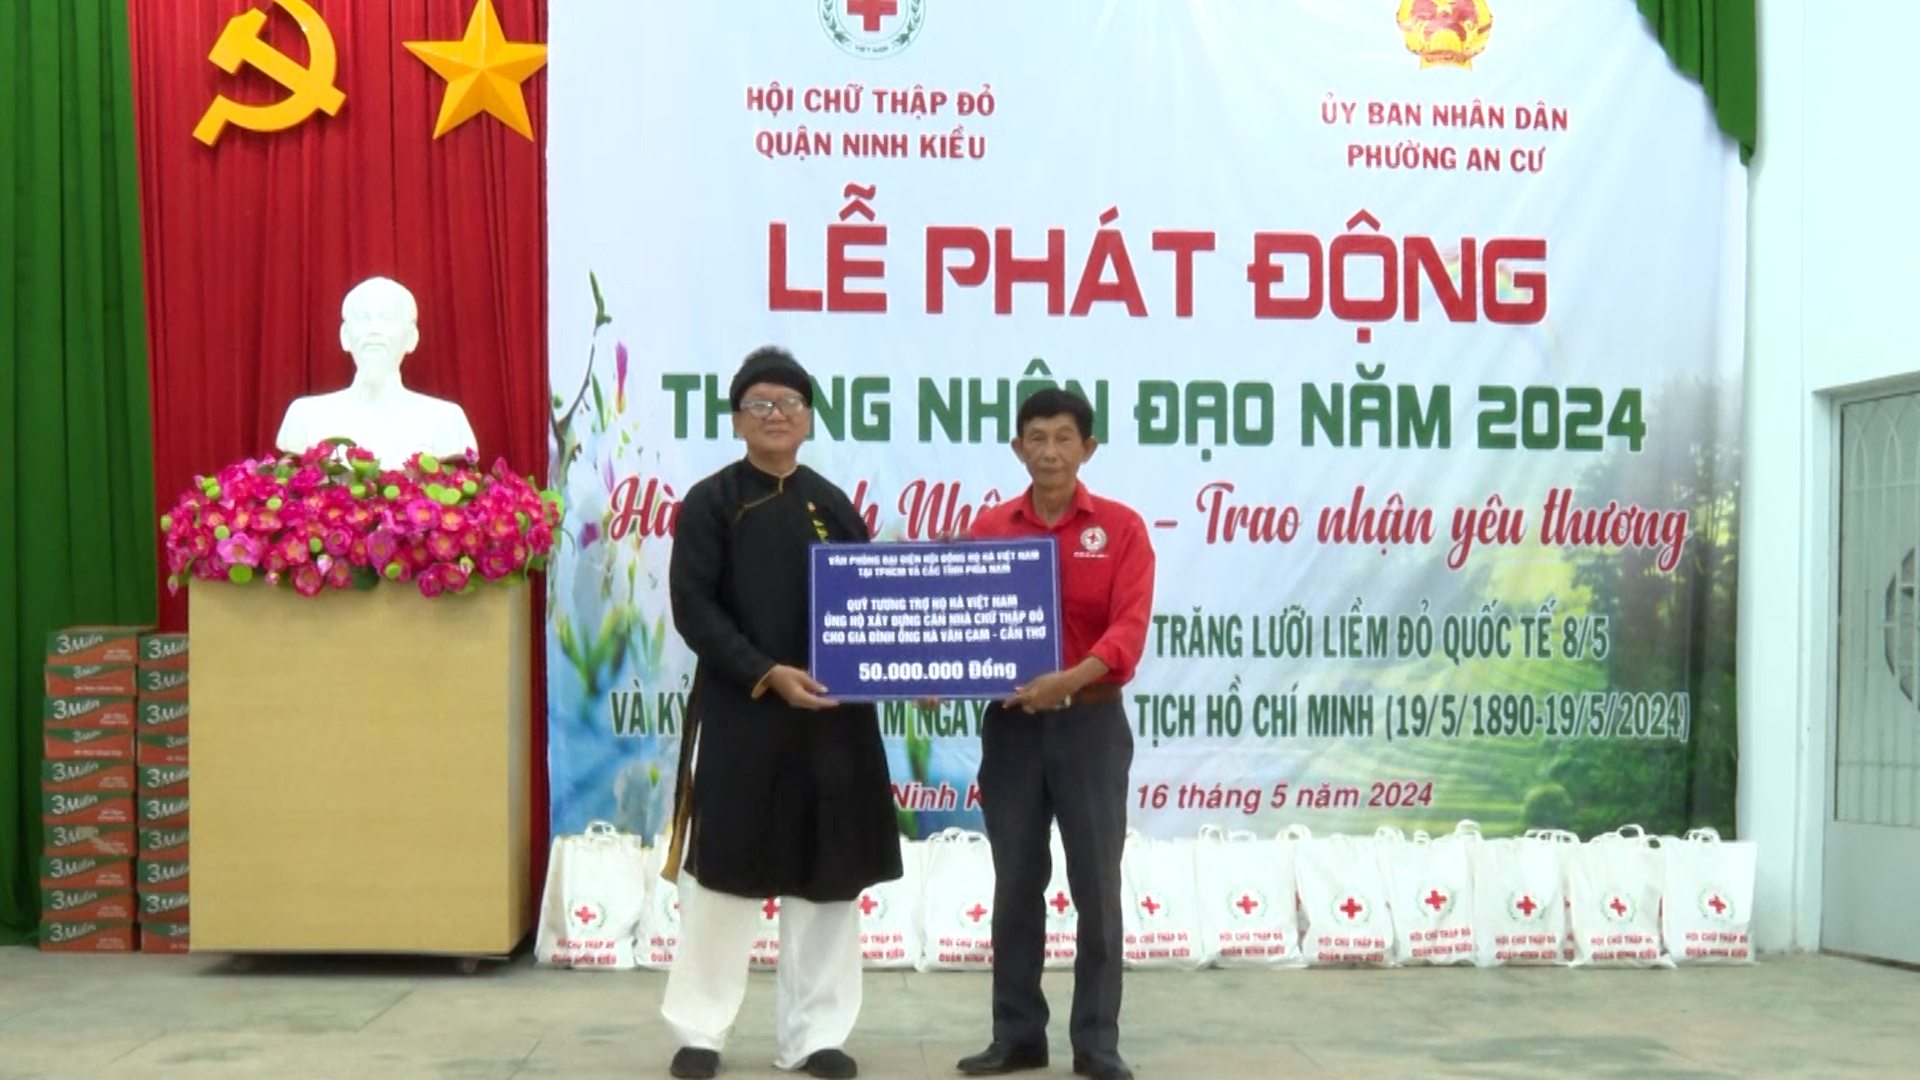 Ông Nguyễn Hoàng Tuấn – Chủ tịch Hội chữ thập đỏ quận Ninh Kiều nhận bảng tượng trưng ủng hộ tháng nhân đạo của mạnh thường quân